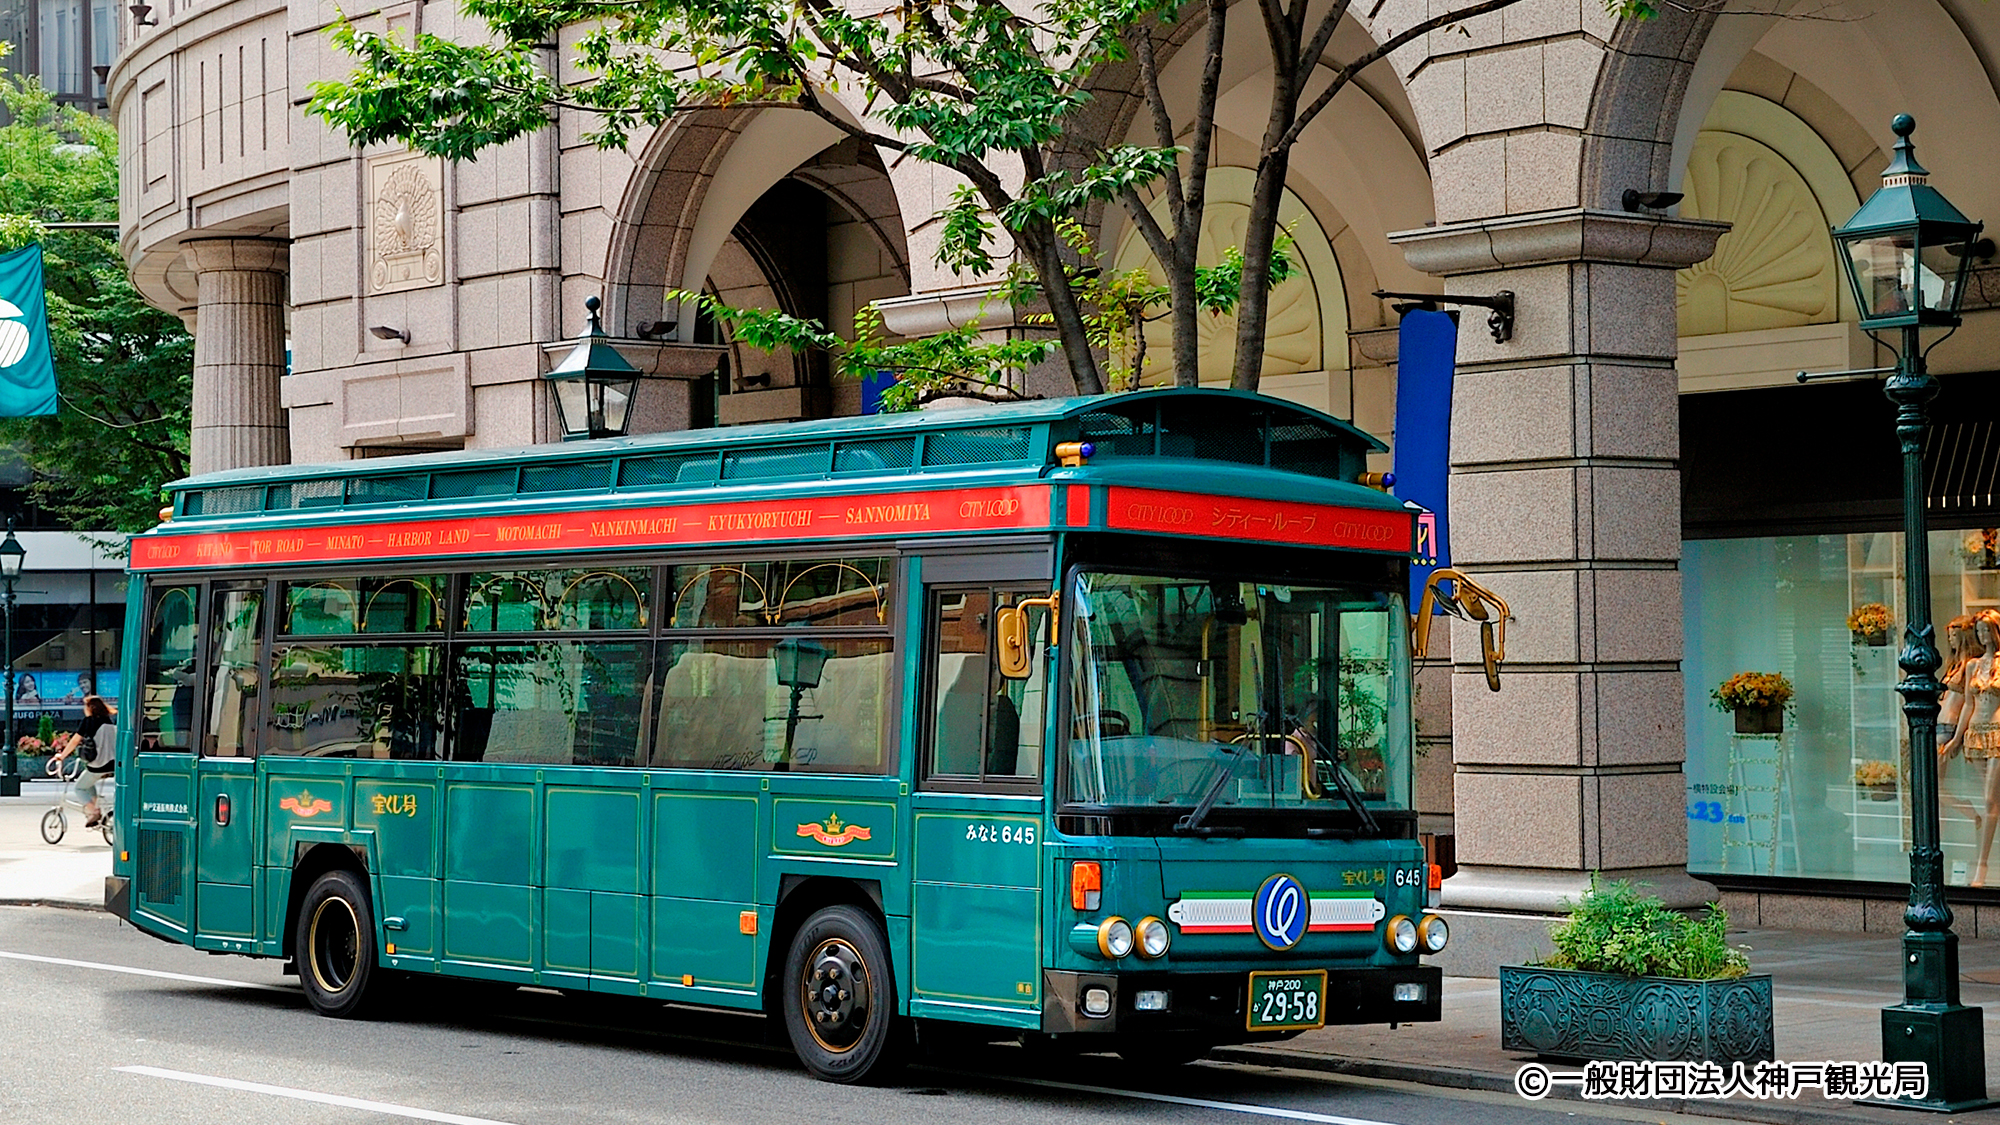 レトロでかわいい観光バス「シティループバス」